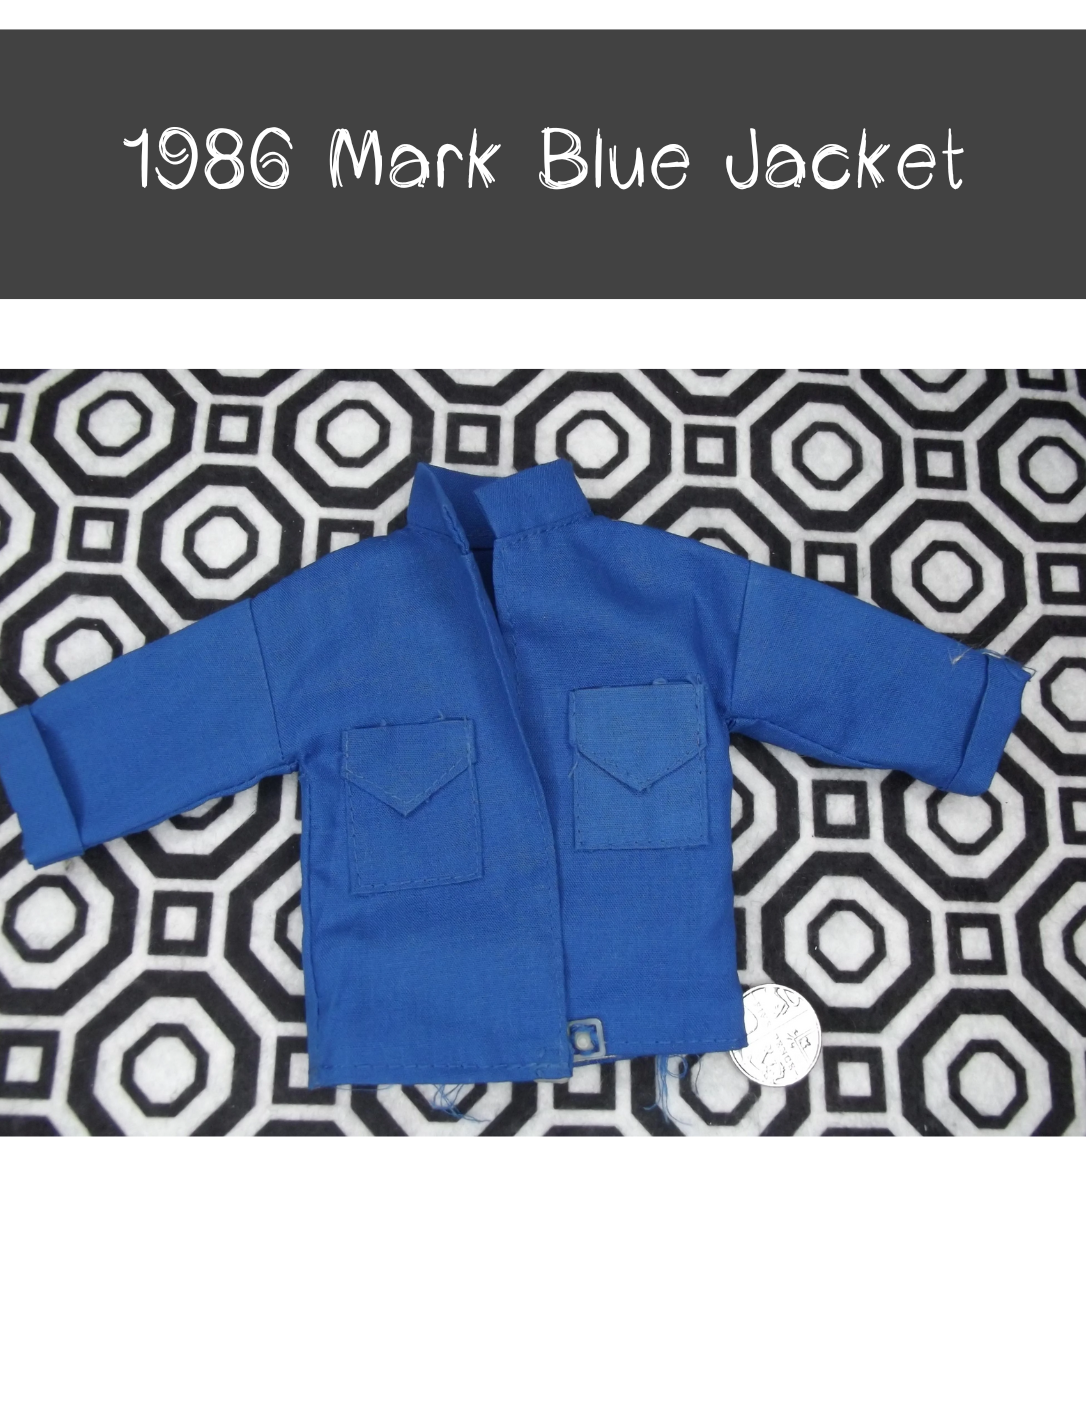 1986 Mark Blue Jacket